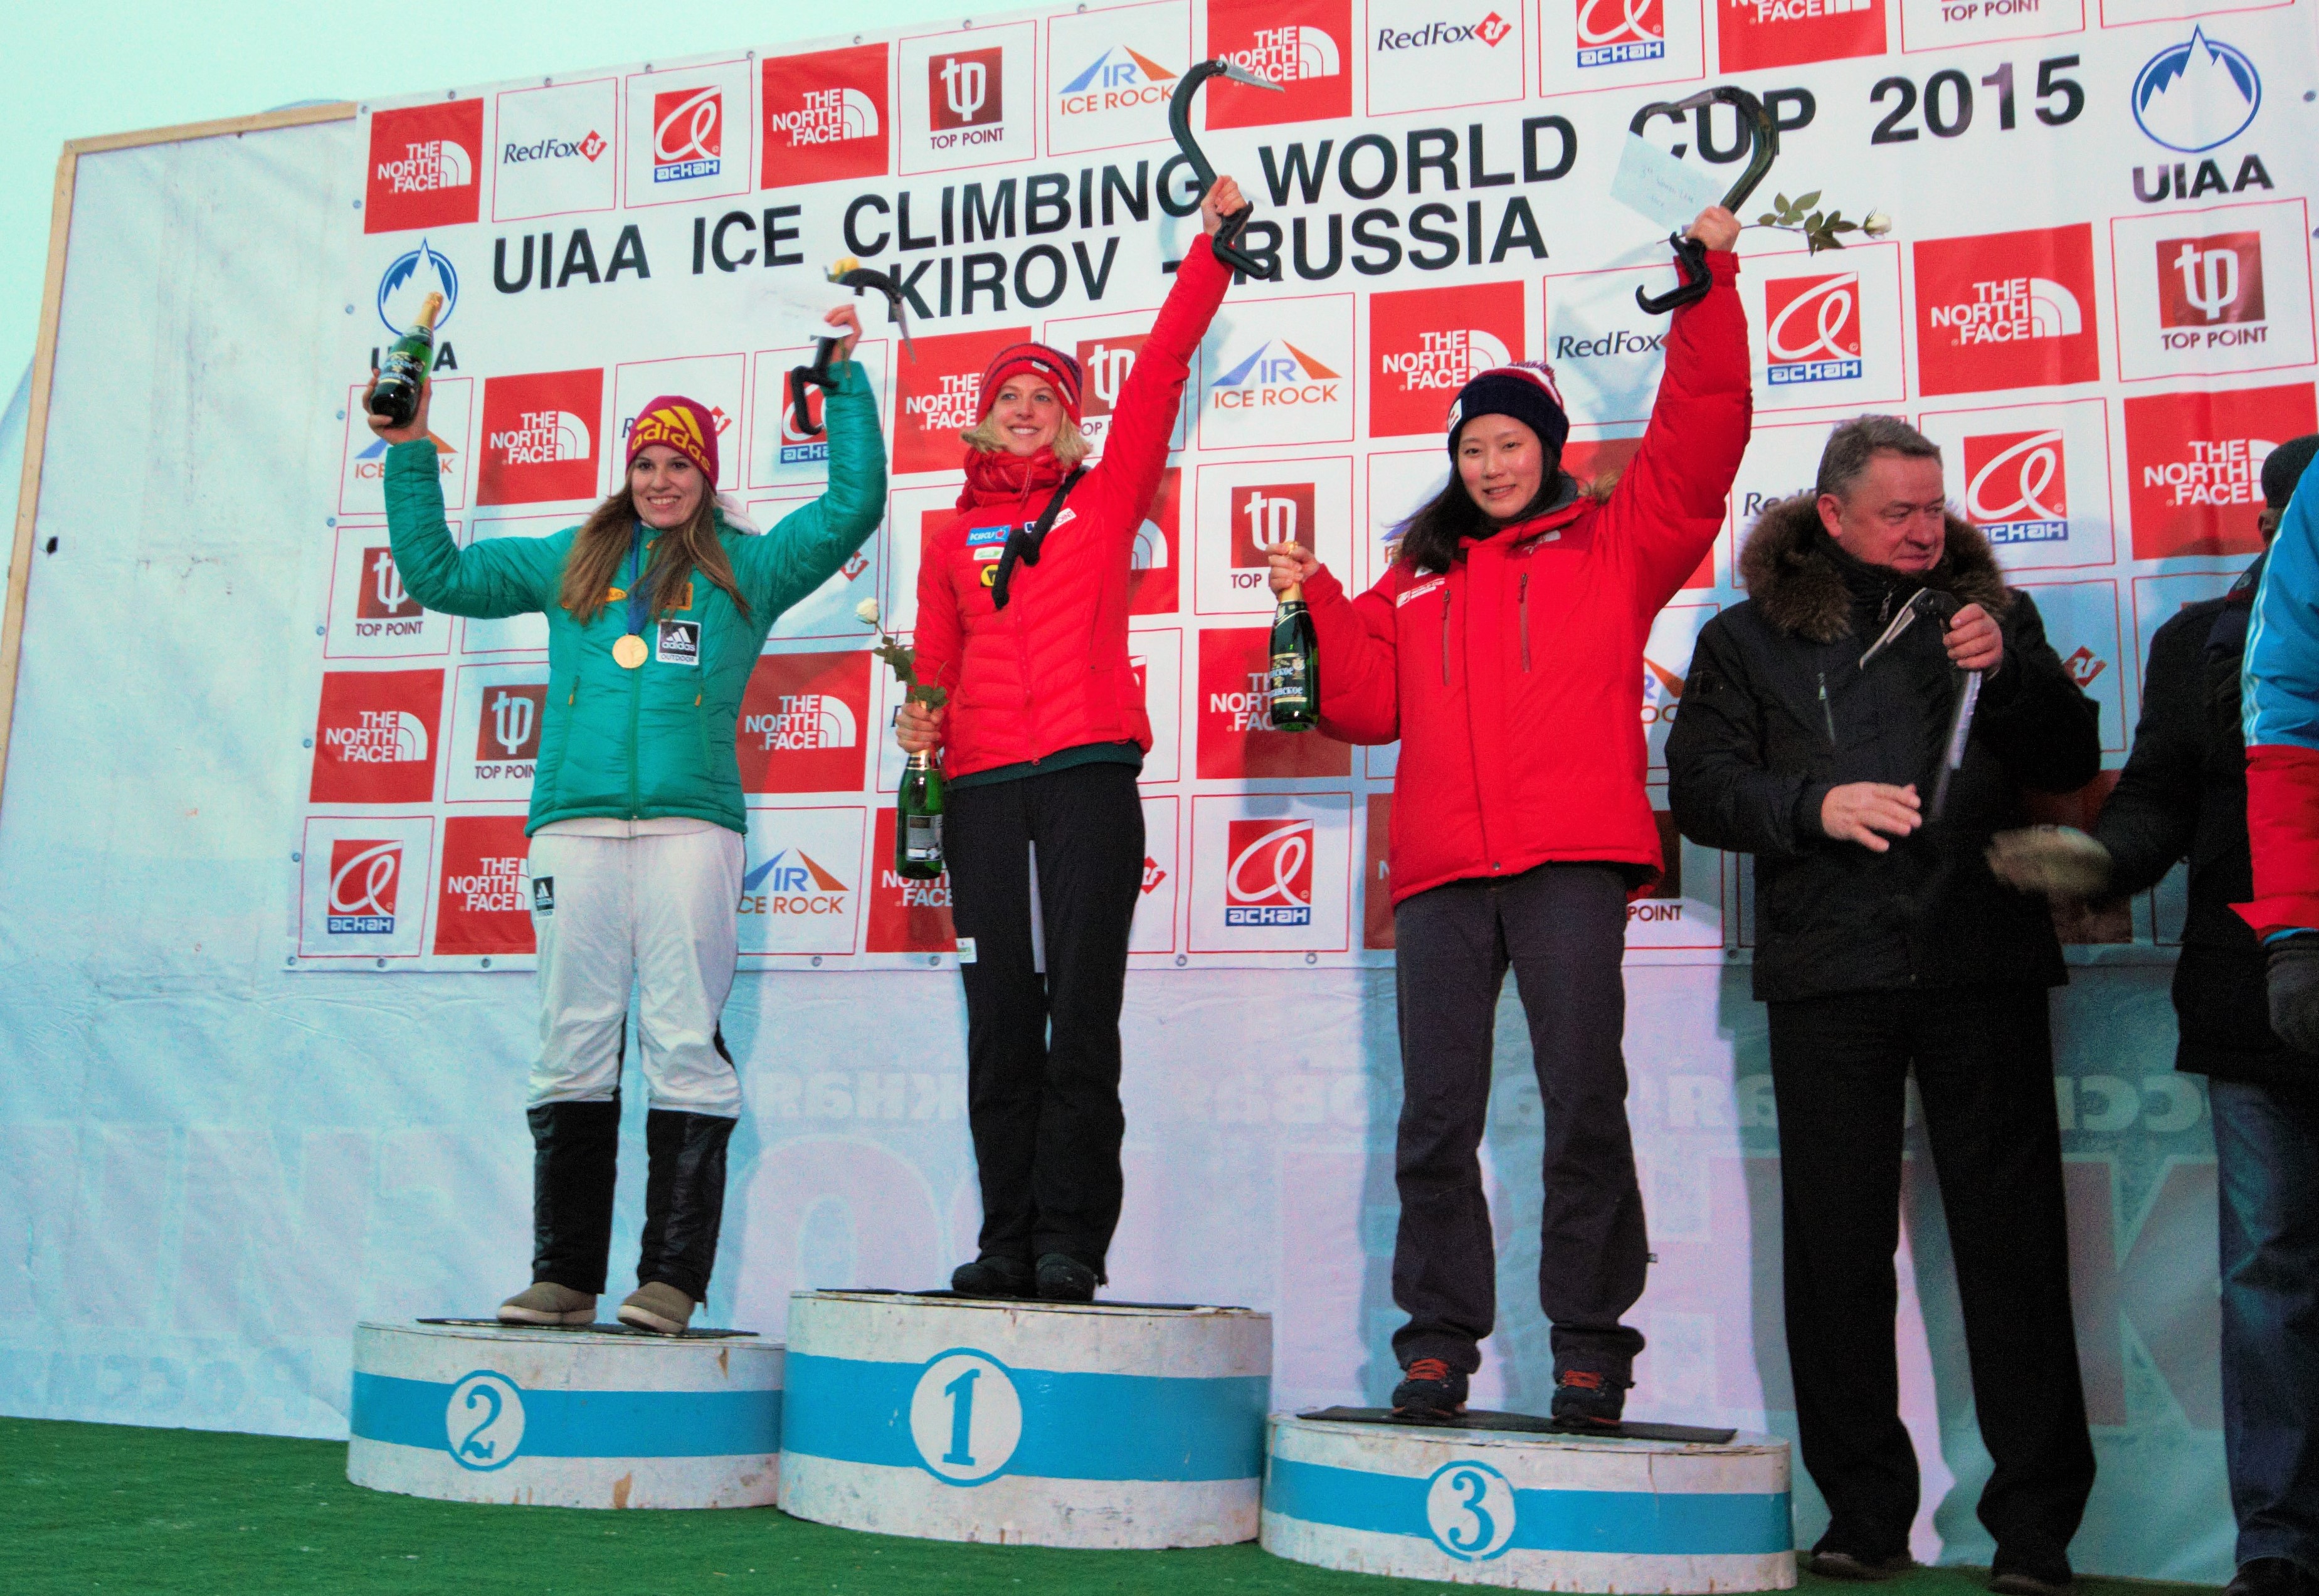 Iceclimbing: Angelika Rainer e Maxim Tomilov vincono la Coppa del mondo 2015